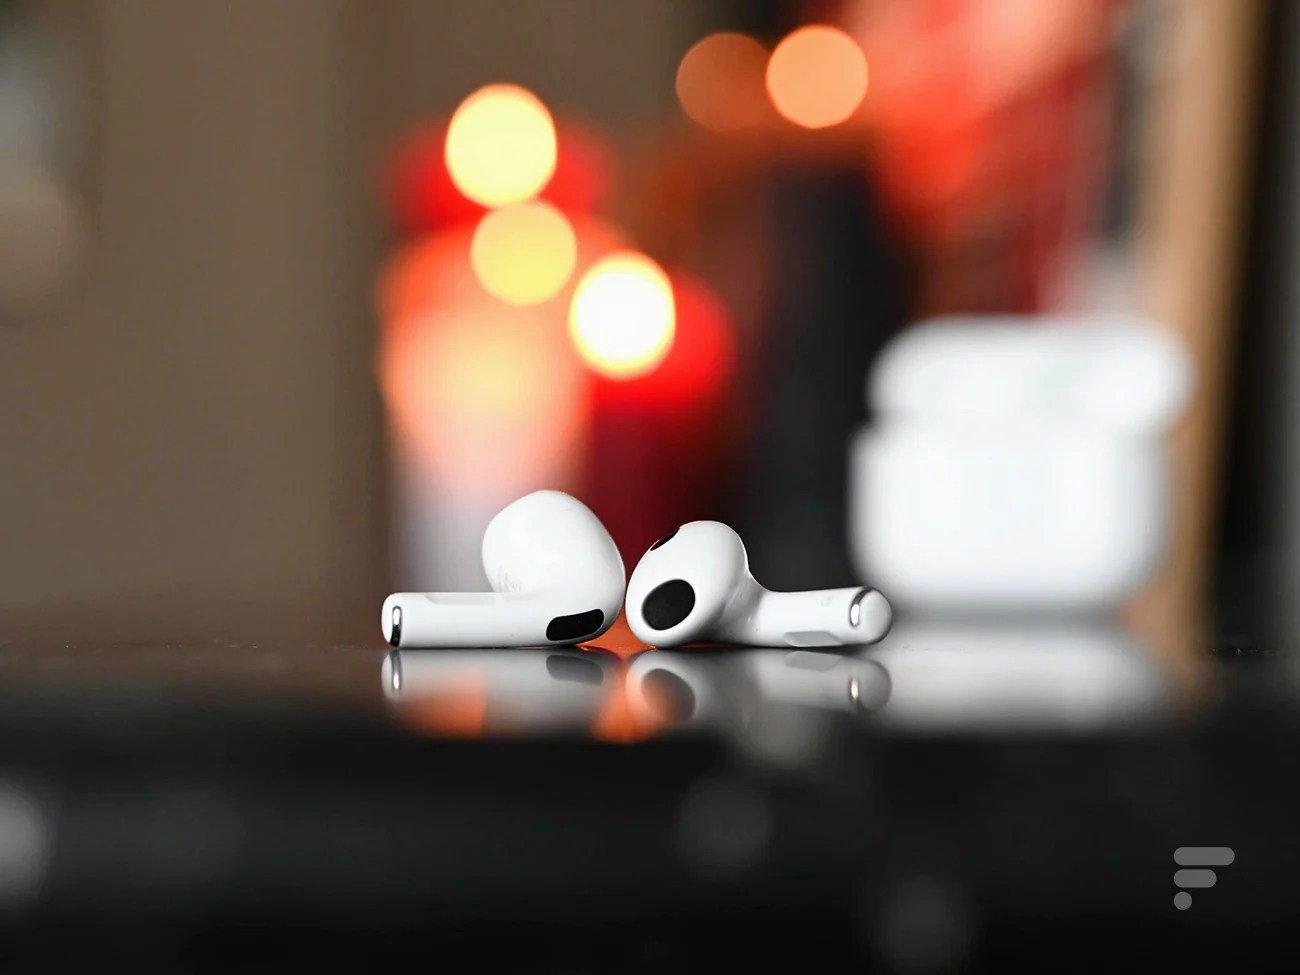 Les AirPods restent la référence des écouteurs sans fil, même si Apple perd de sa superbe